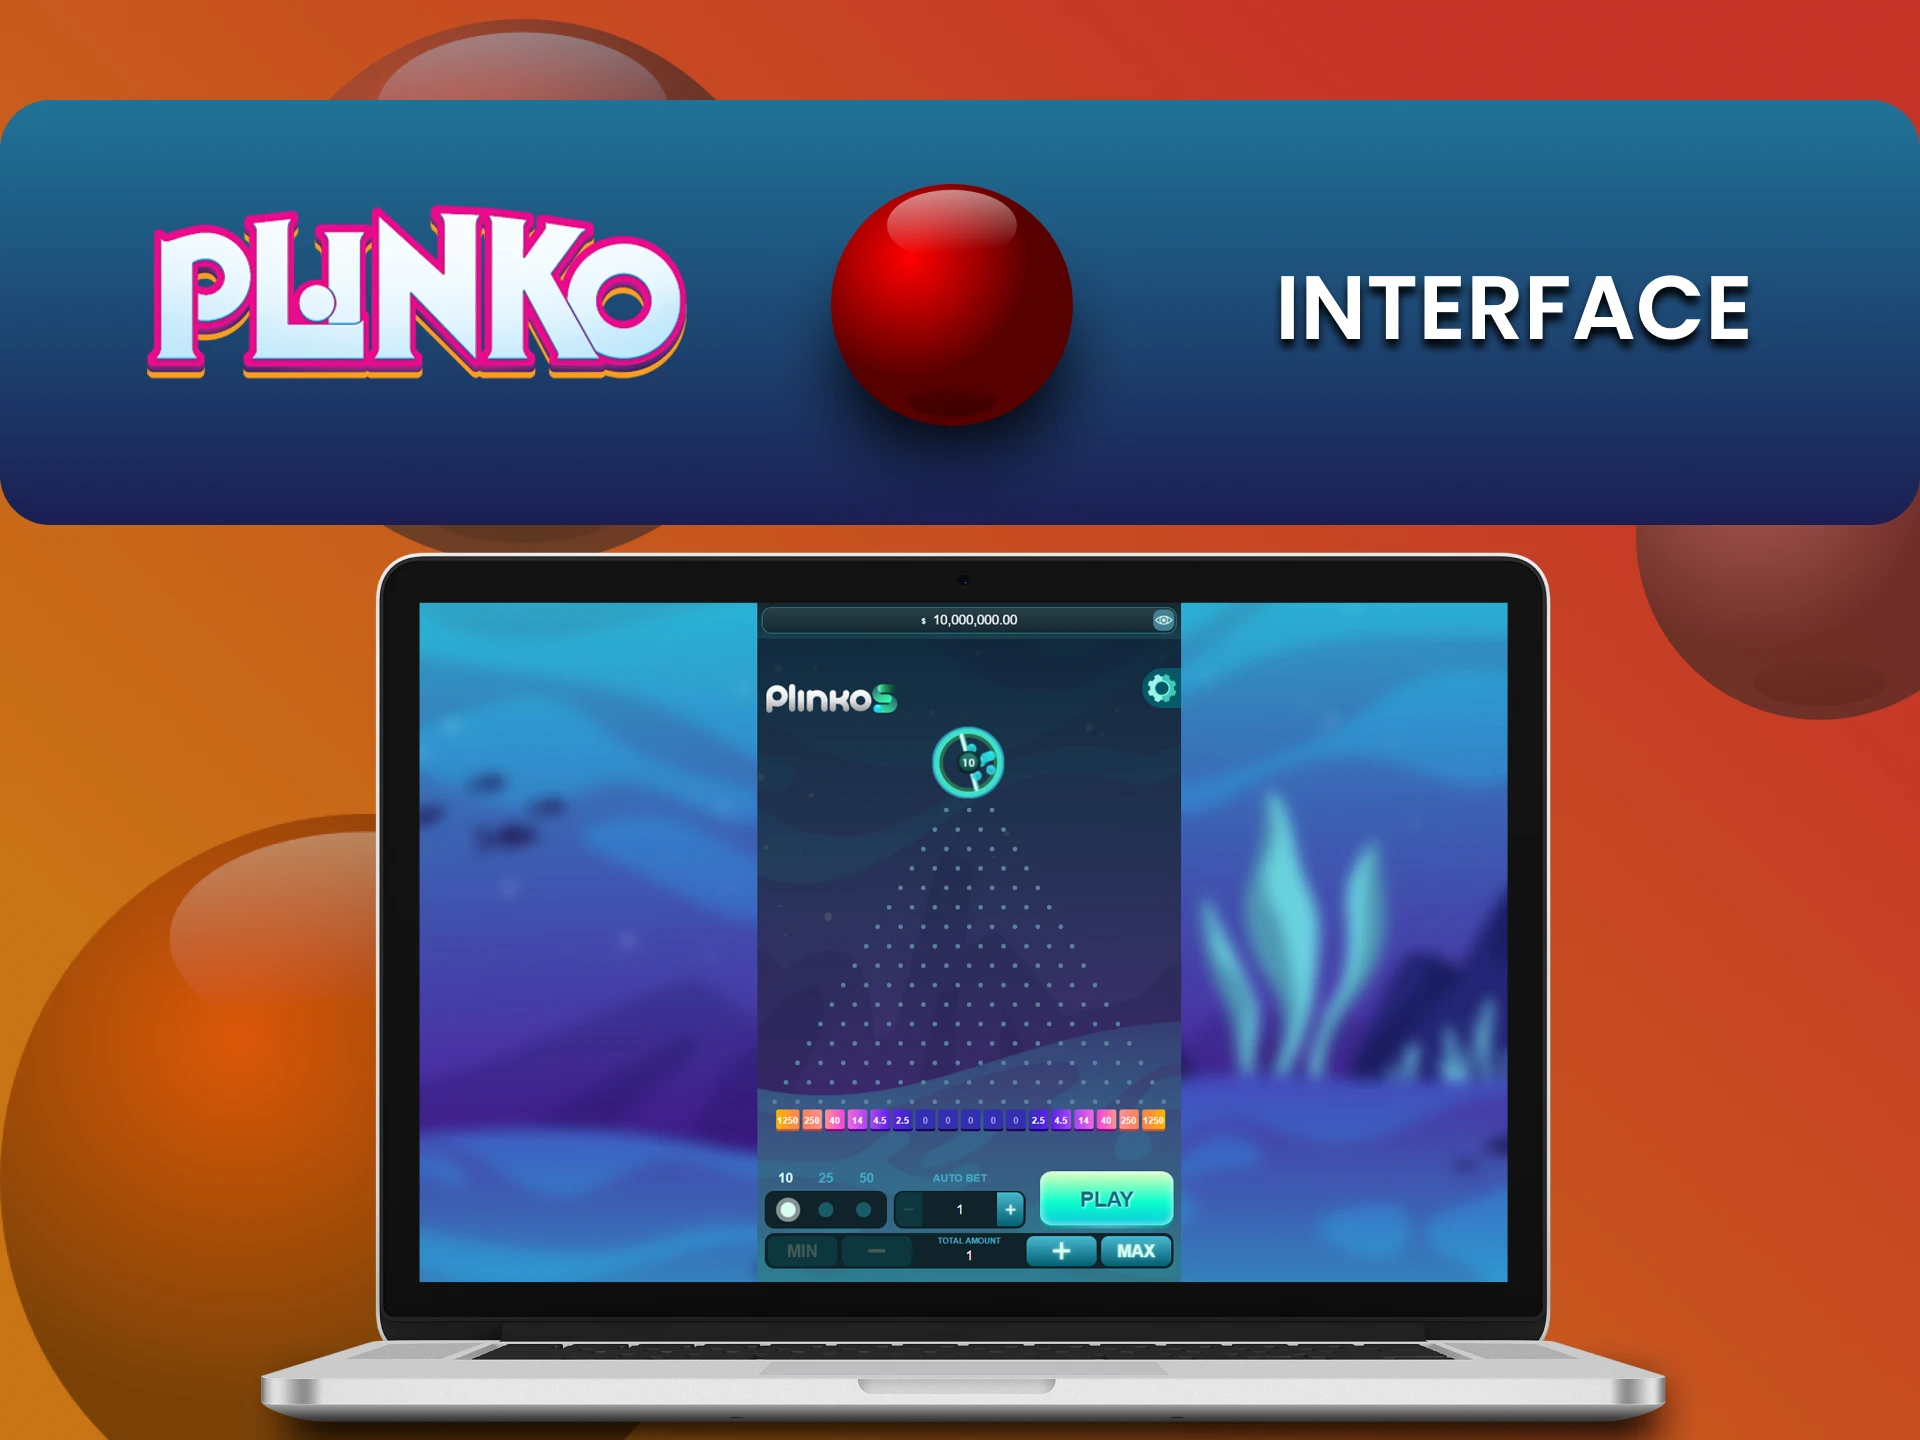 Explore the Plinko game interface.